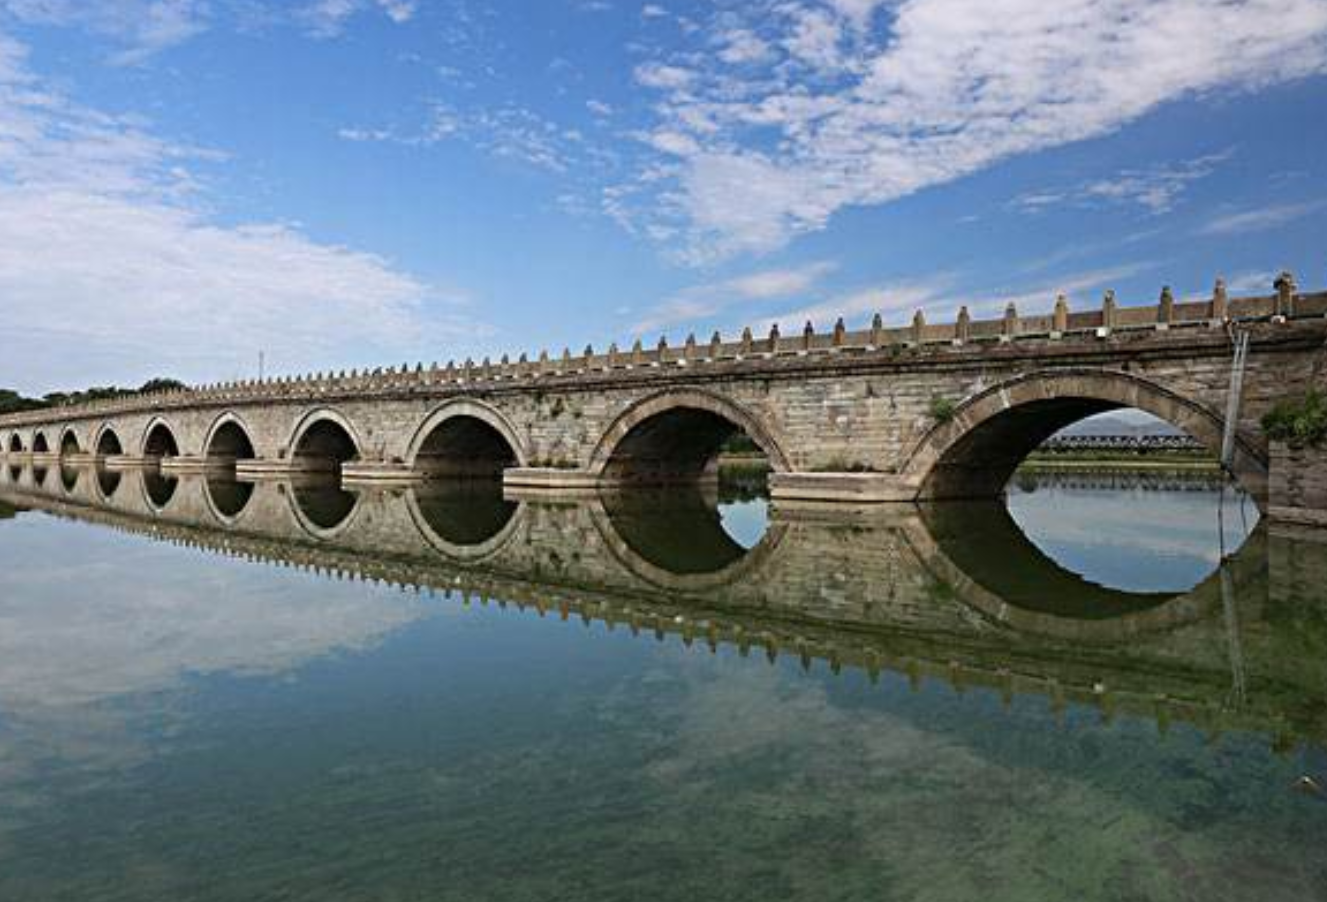 中国十大著名桥梁图片